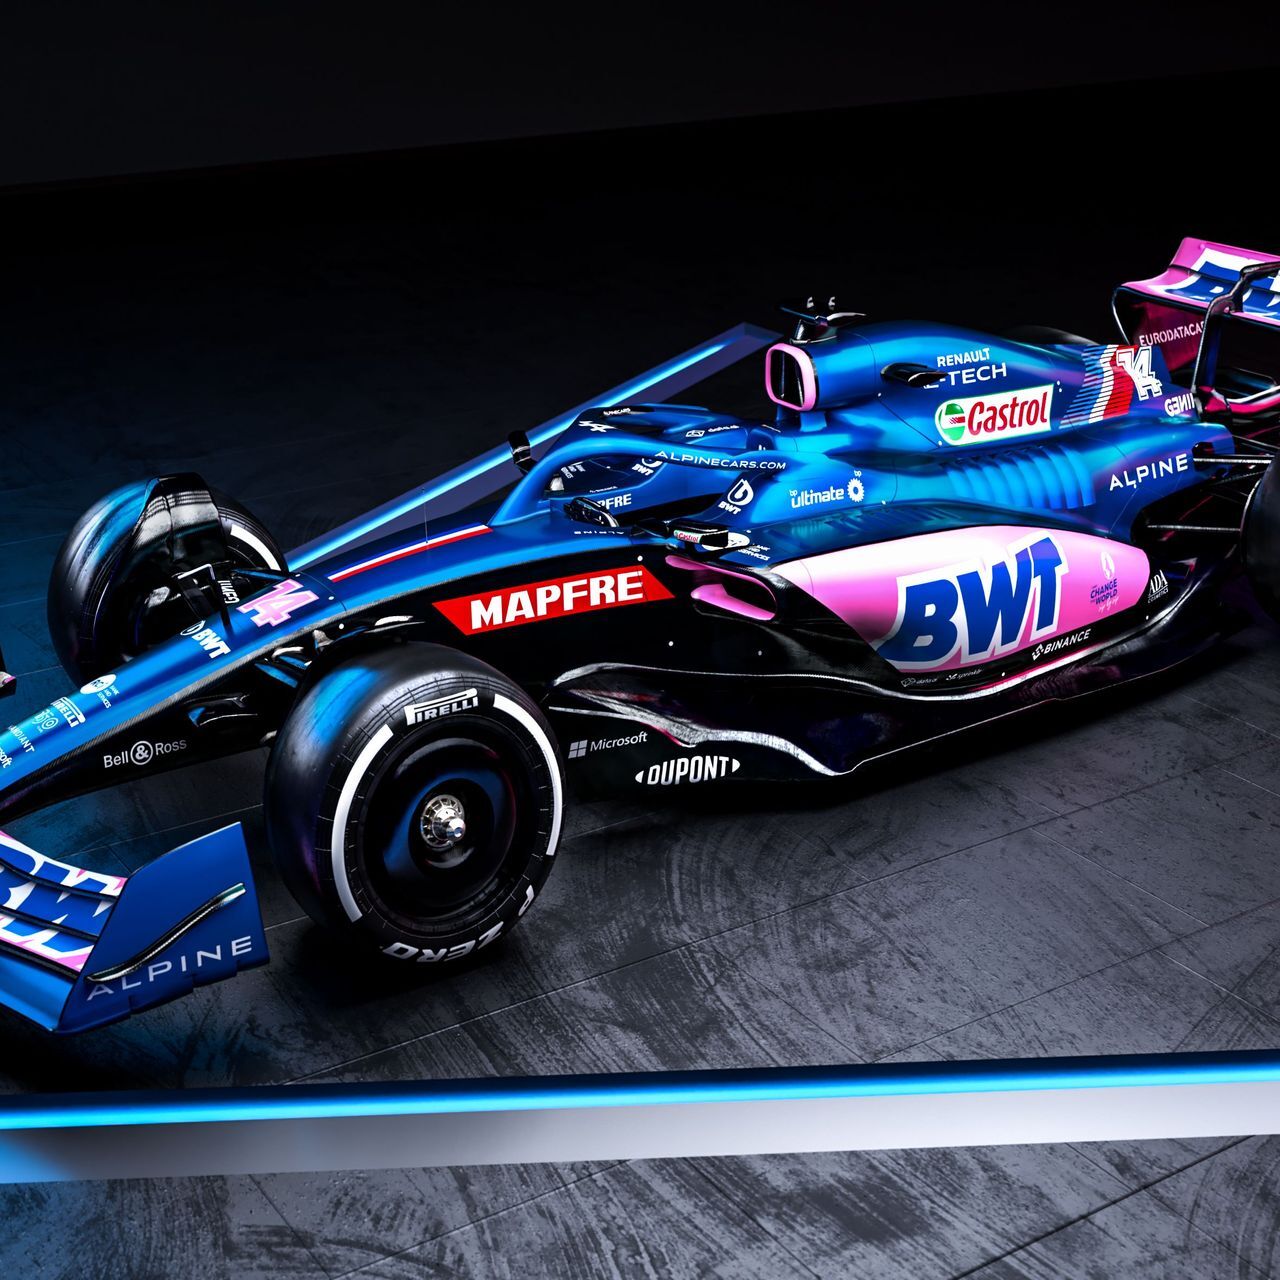 La monoposto del BWT Alpine F1 Team per la stagione 2022 di Formula 1